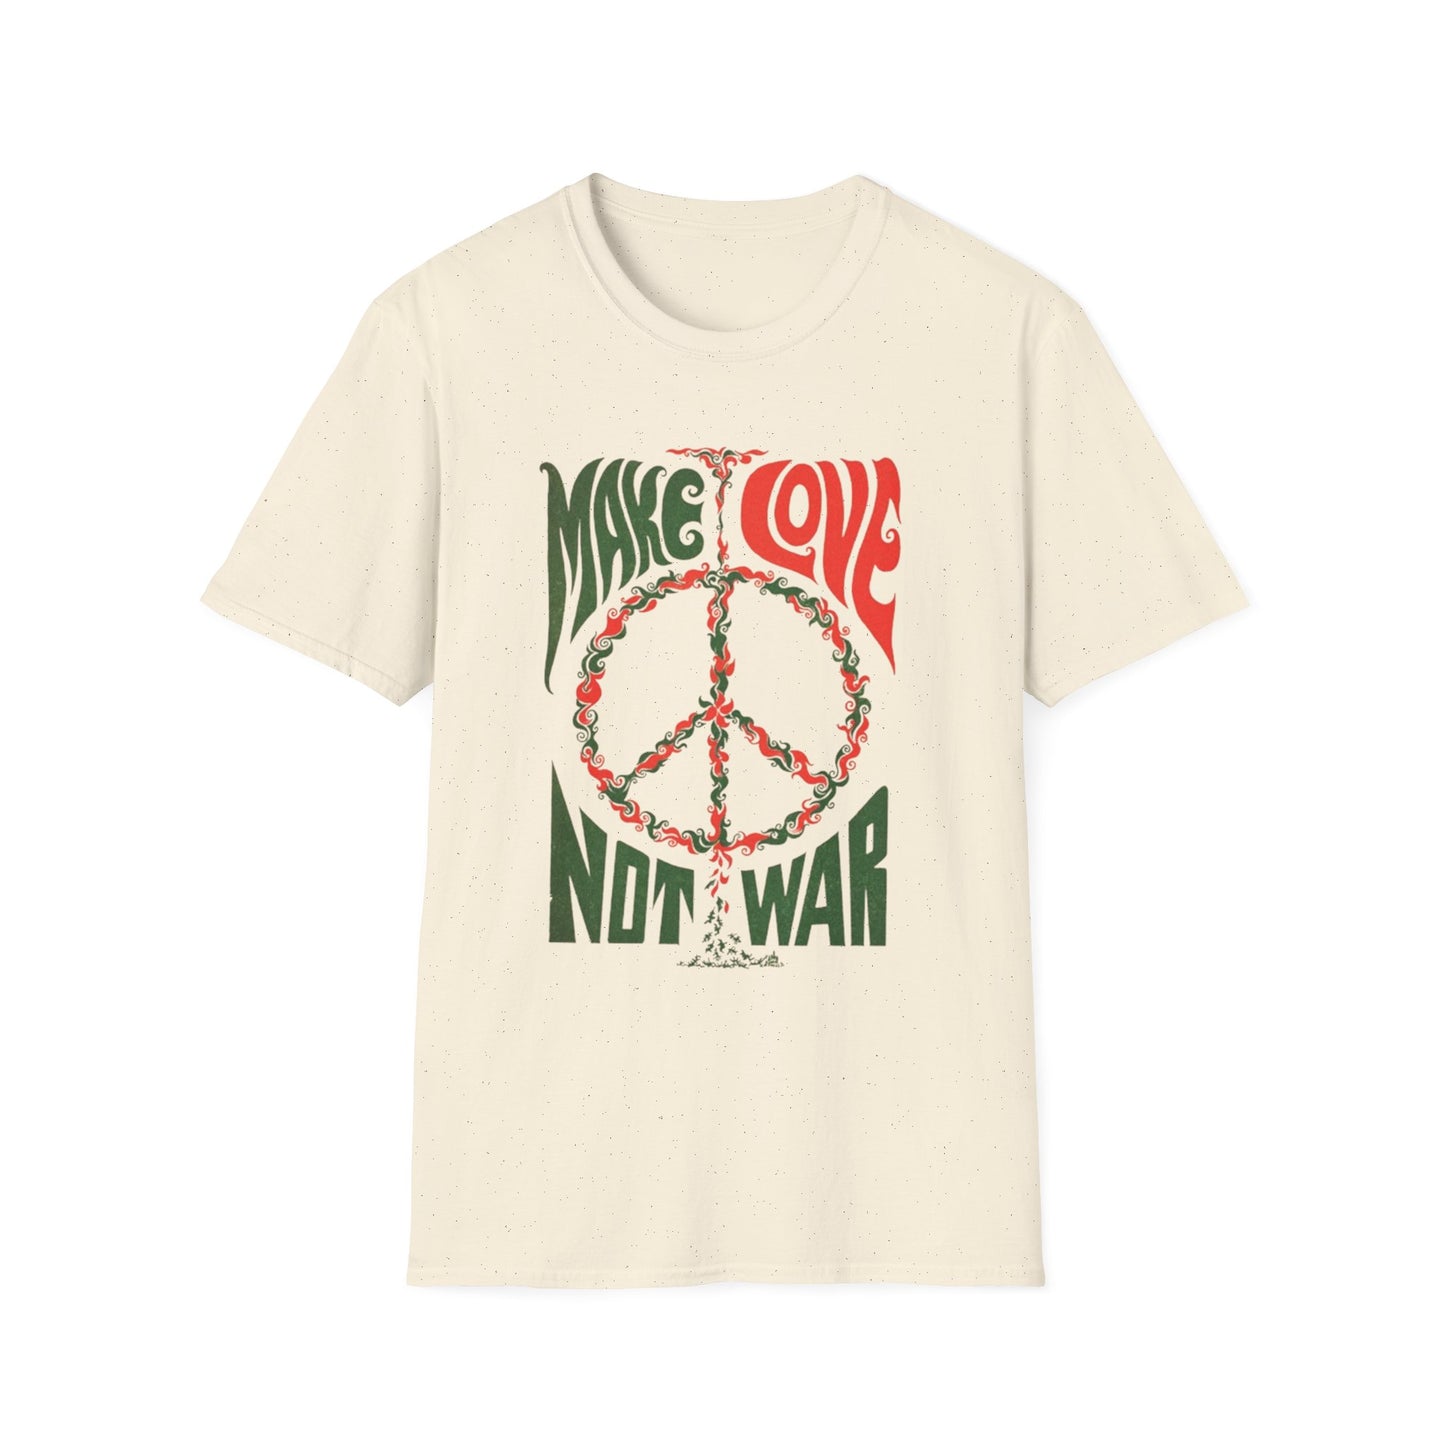 Make Love Not War - Unisex Softstyle T-Shirt